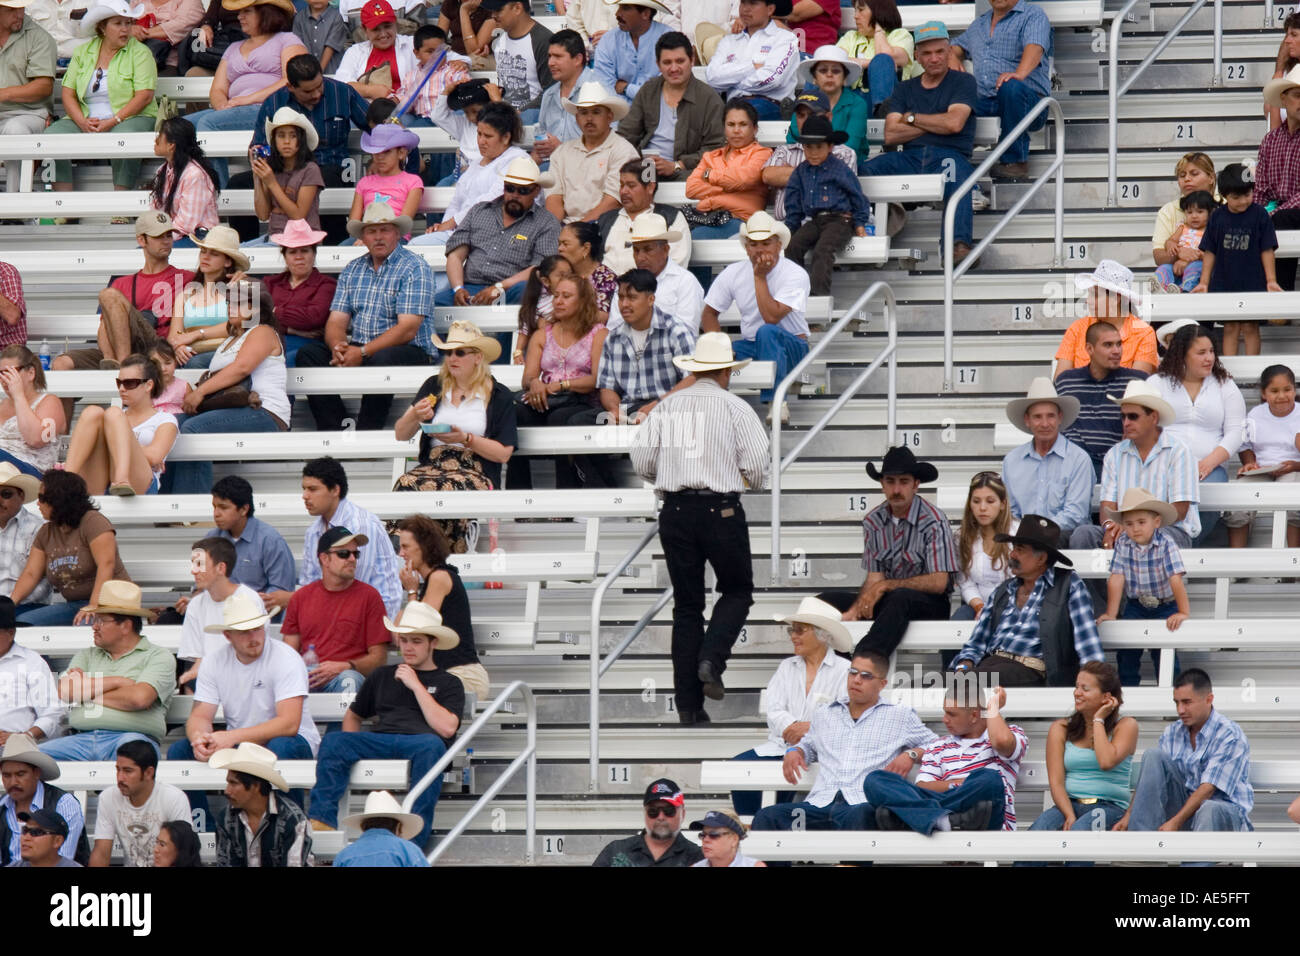 Rodeo-Publikum sitzen im Stadion Bleacher Sitze mit Mann in einem Cowboy-Hut, den Gang zu Fuß Stockfoto